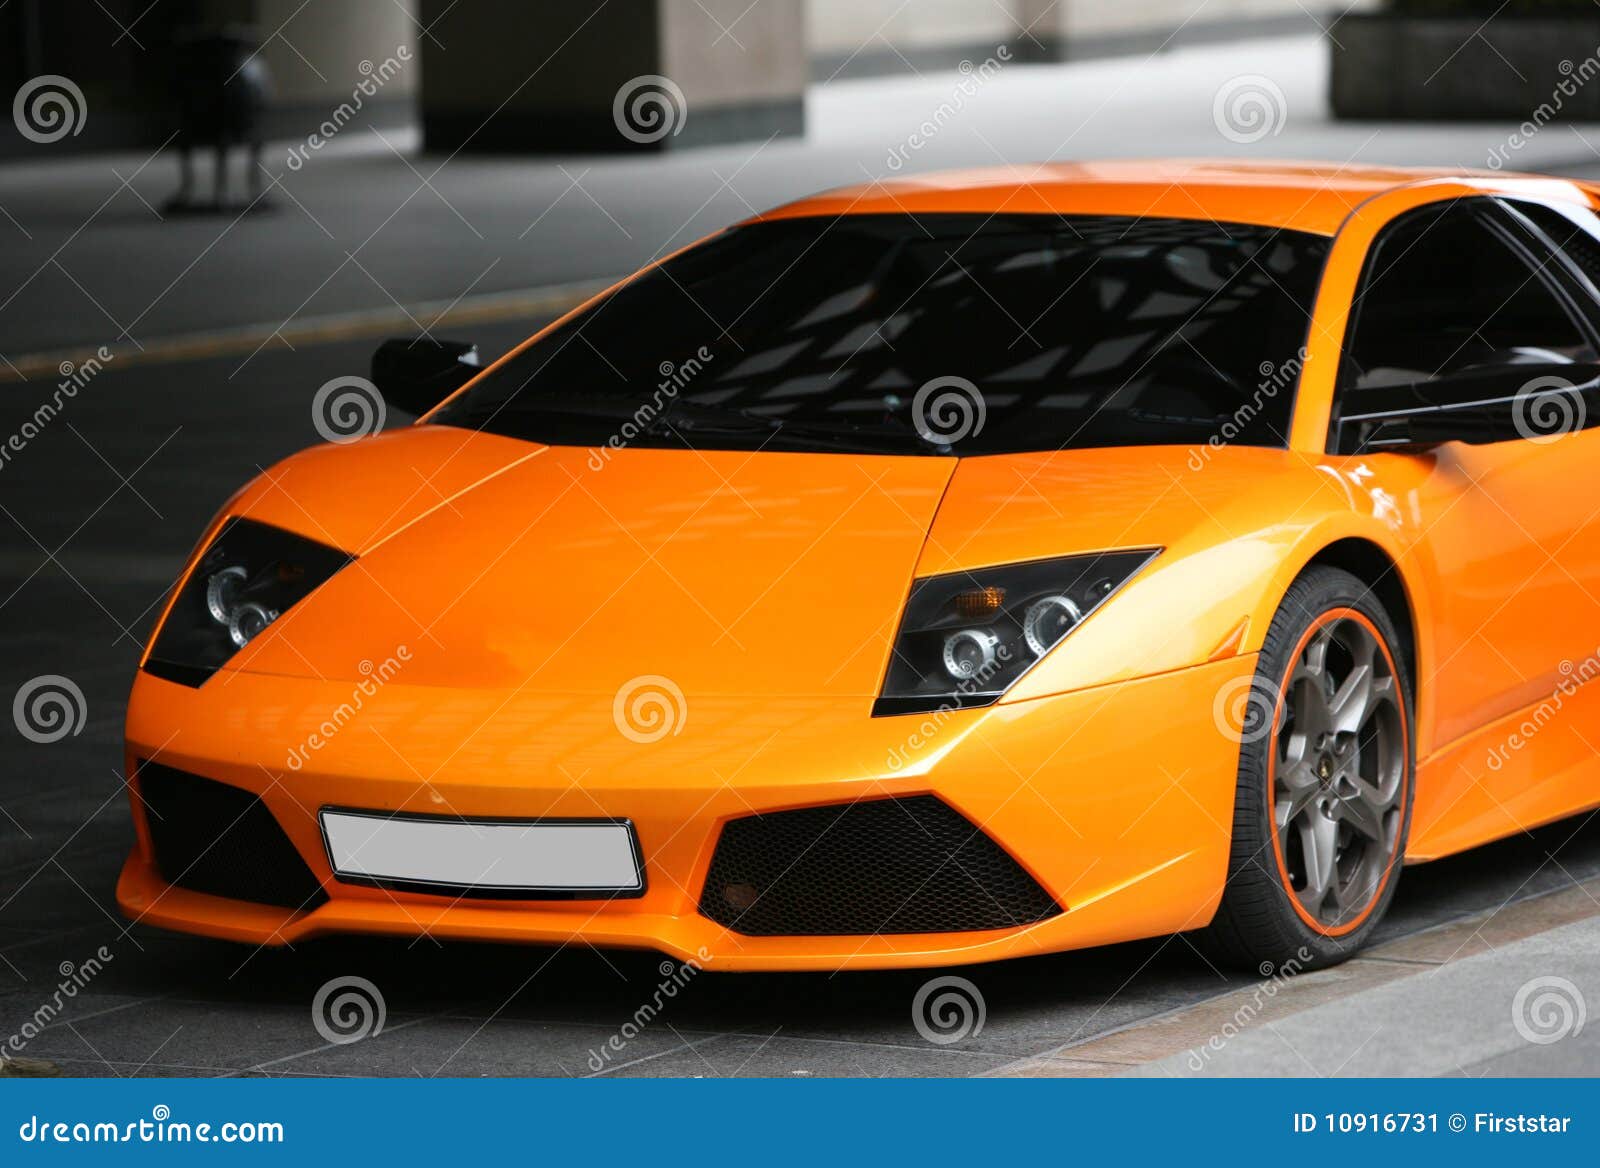 Sports orange car stock image. Image of orange, reflecting ...